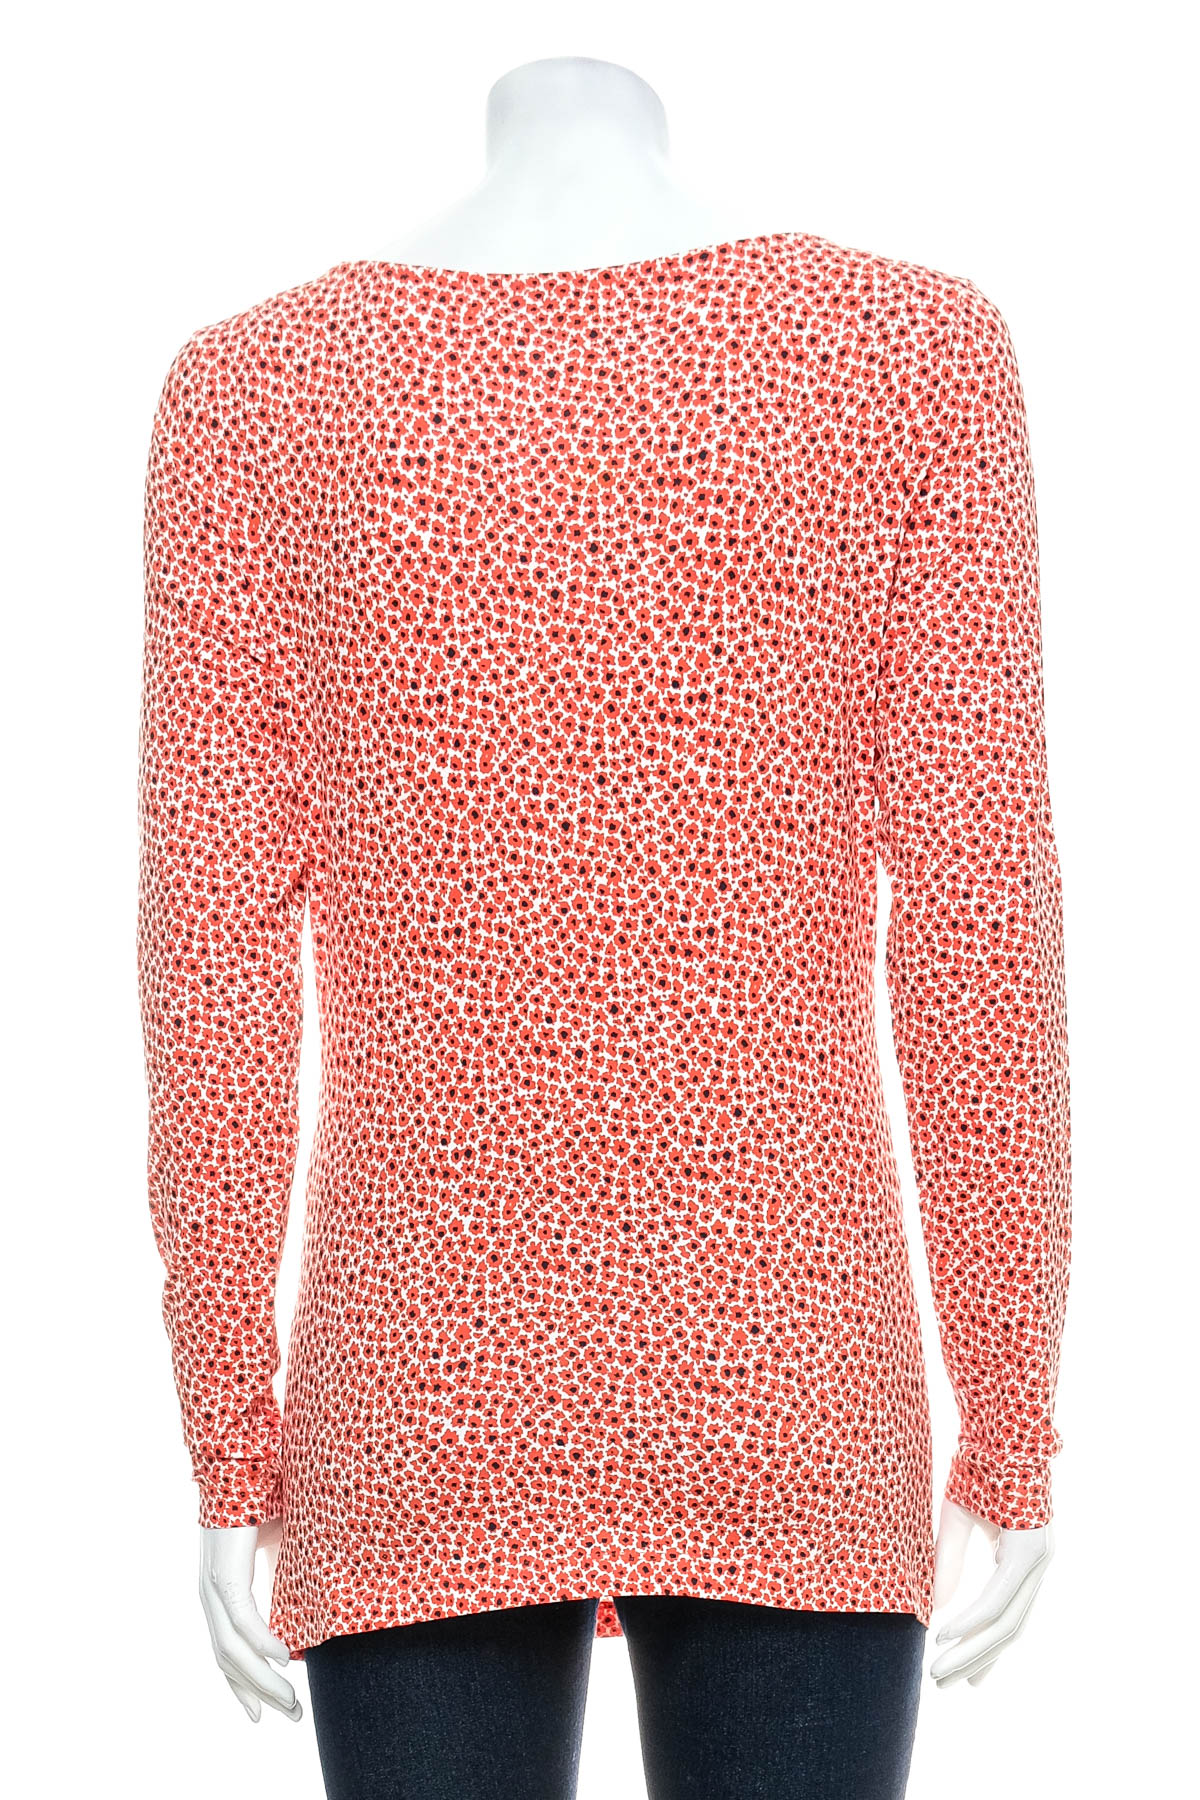 Women's blouse - ESPRIT - 1